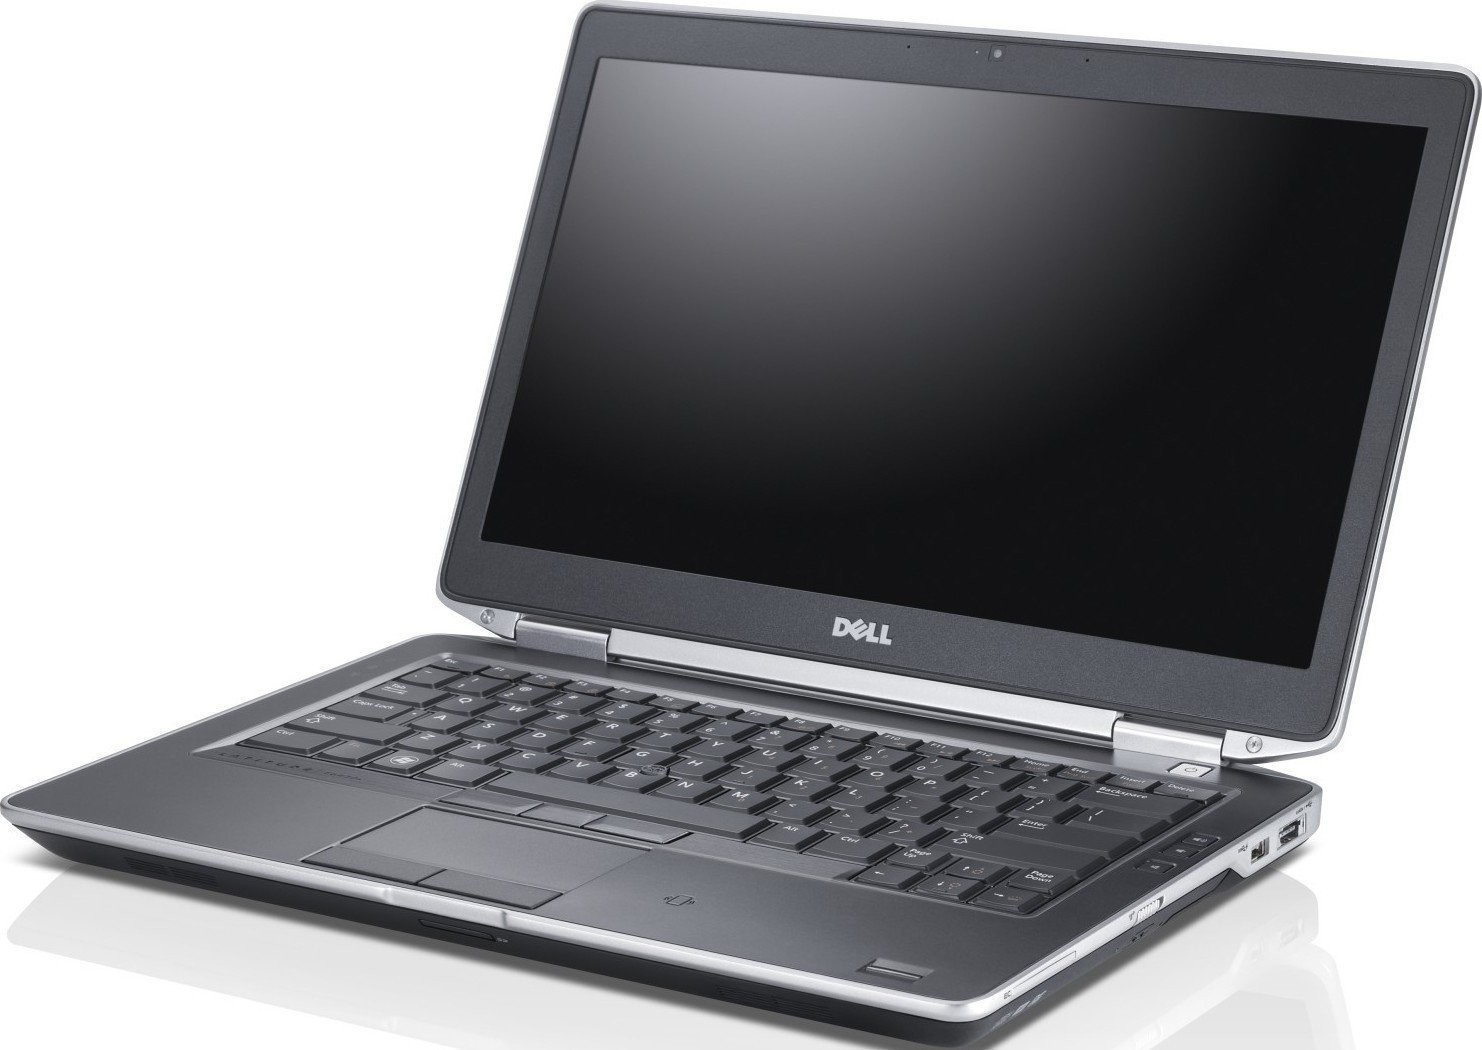 Dell Latitude E6420 Laptop WEBCAM - HDMI - i5 2.5ghz - 4GB DDR3 - 160GB - DVDRW - Windows 7 64bit - REMIS A NEUF - REFURBISHED